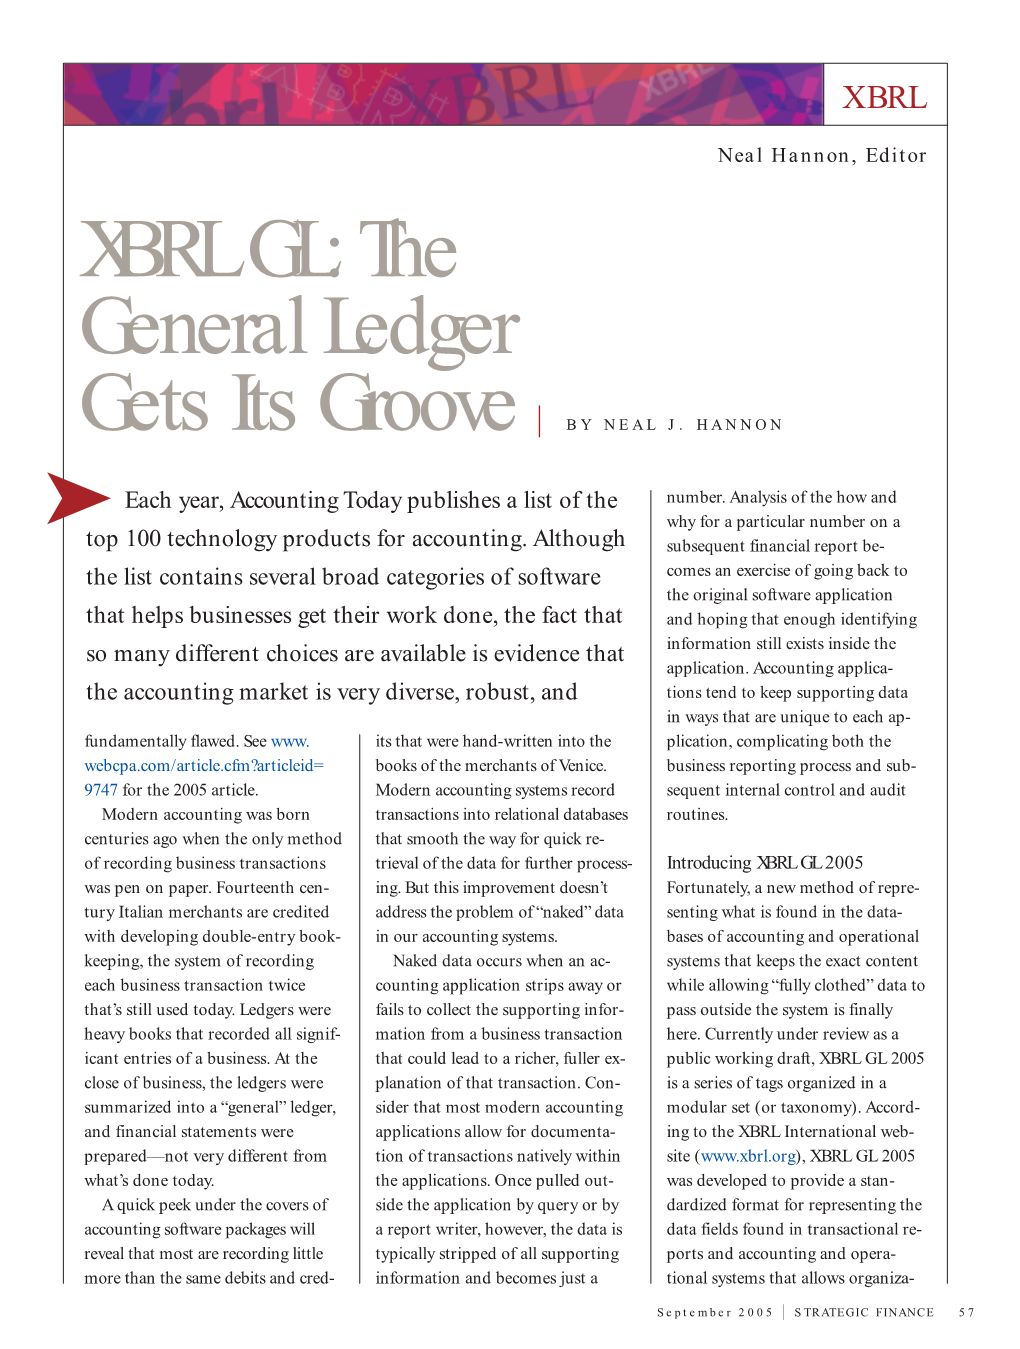 XBRL GL: the General Ledger